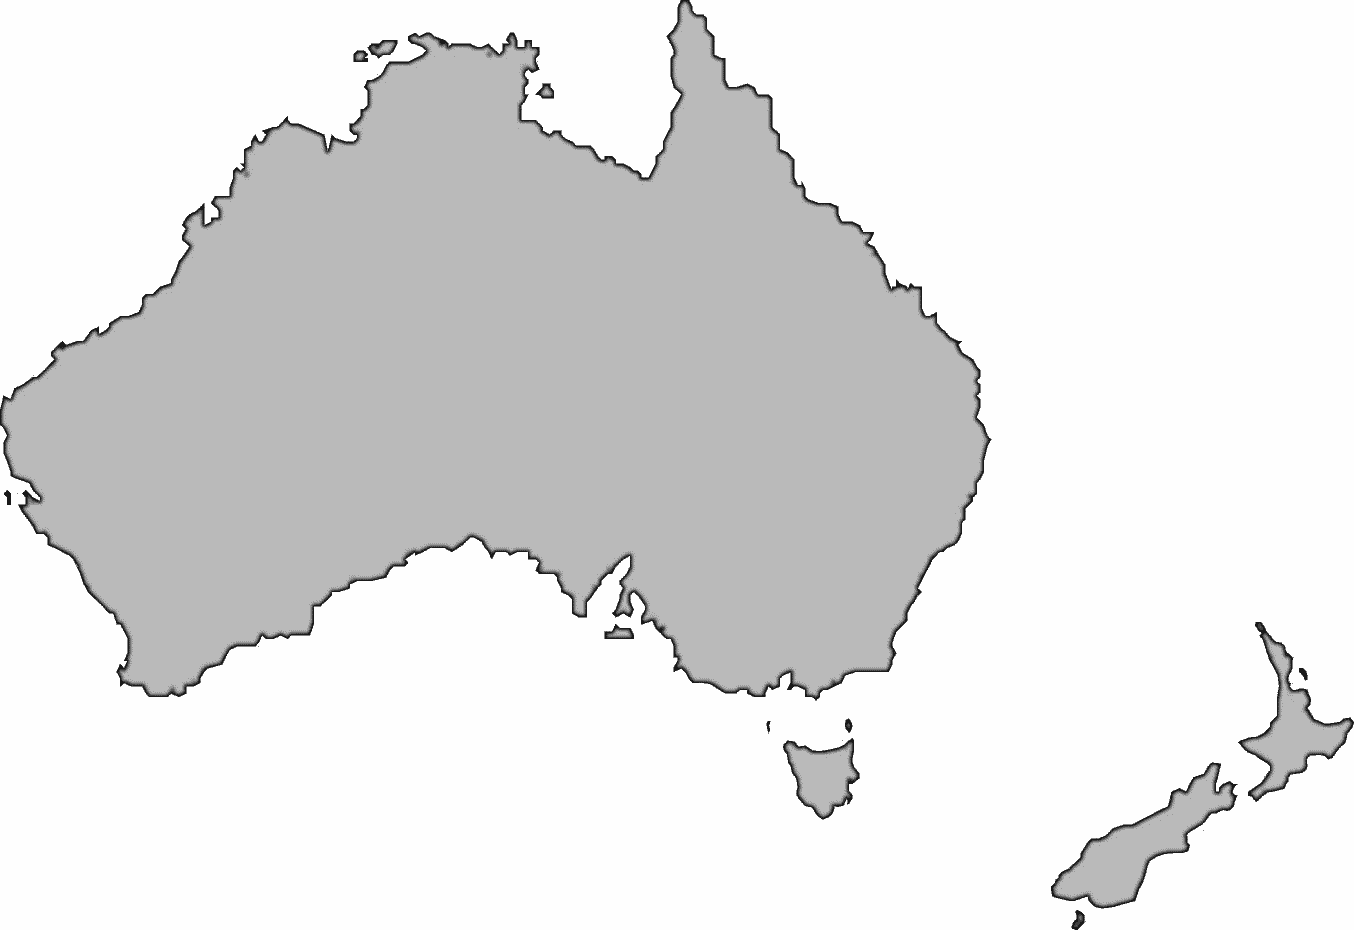 Australia large BW